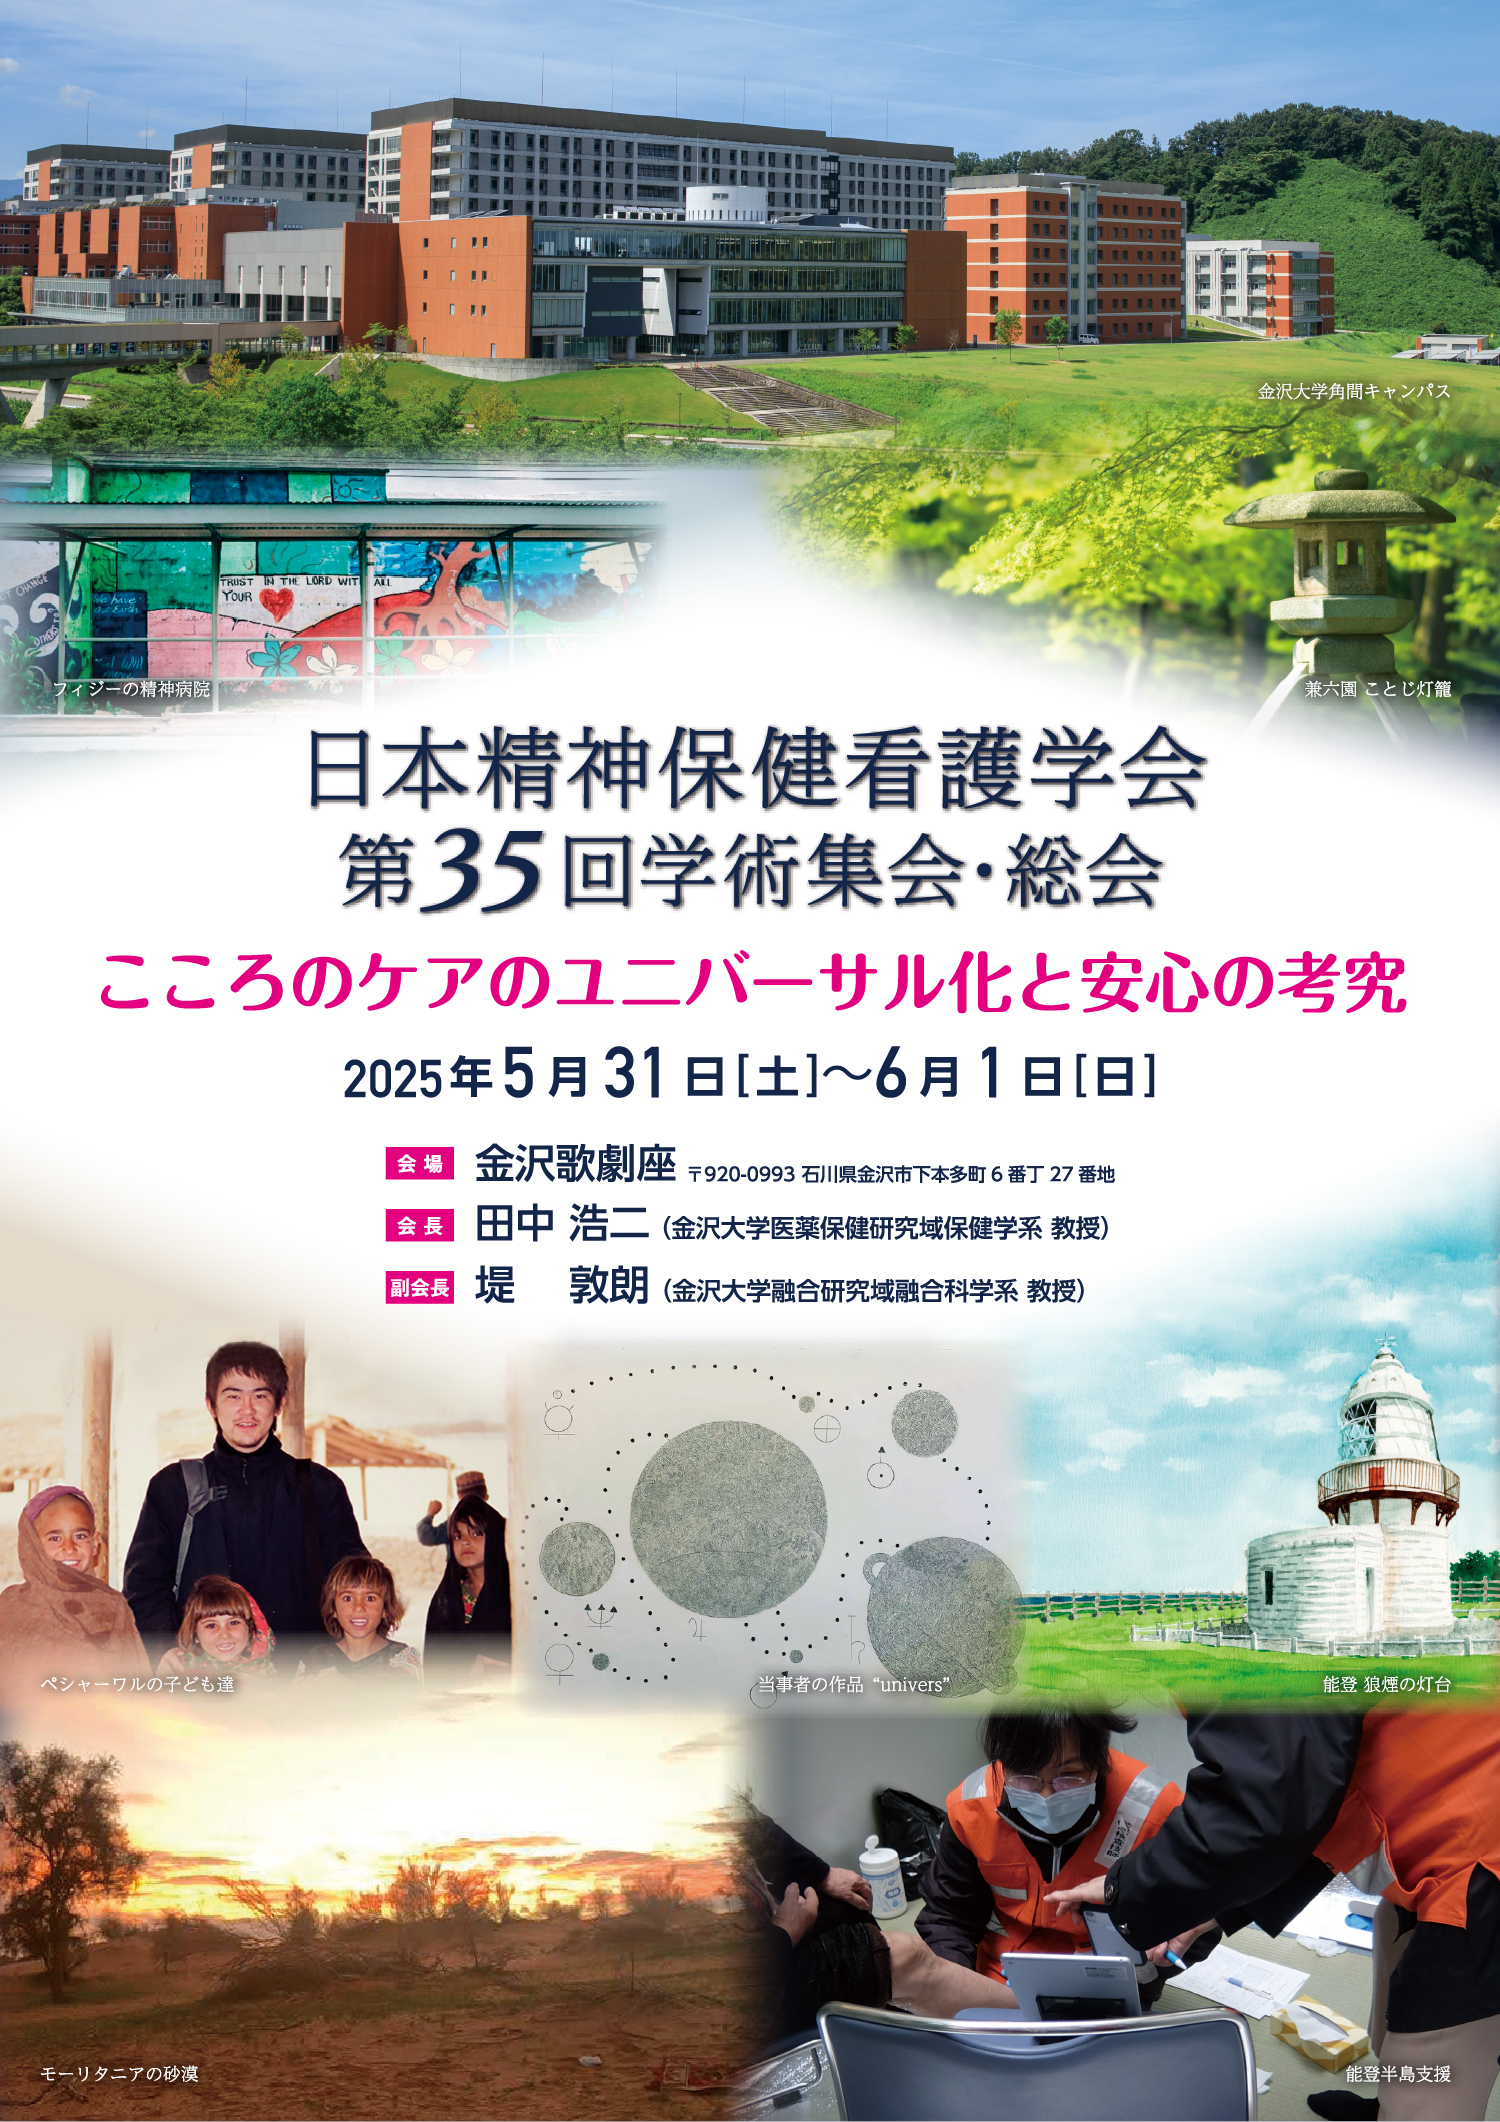 日本精神保健看護学会第35回学術集会・総会